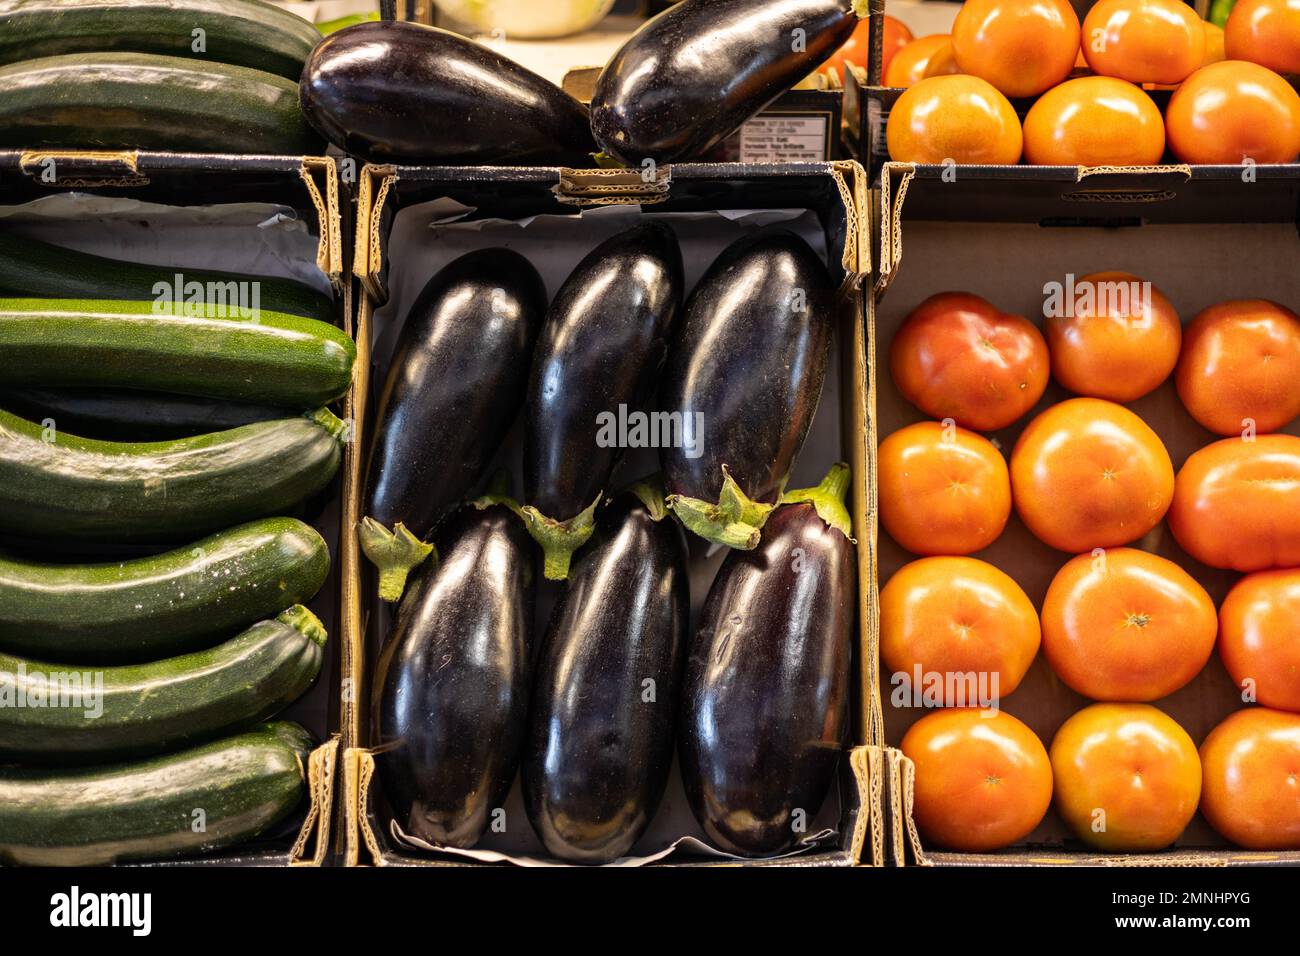 Farbenfrohes Bio-Sommergemüse, Tomaten, Zucchini und Auberginen in Schachteln, die auf dem lokalen Obst- und Gemüsemarkt verkauft werden Stockfoto